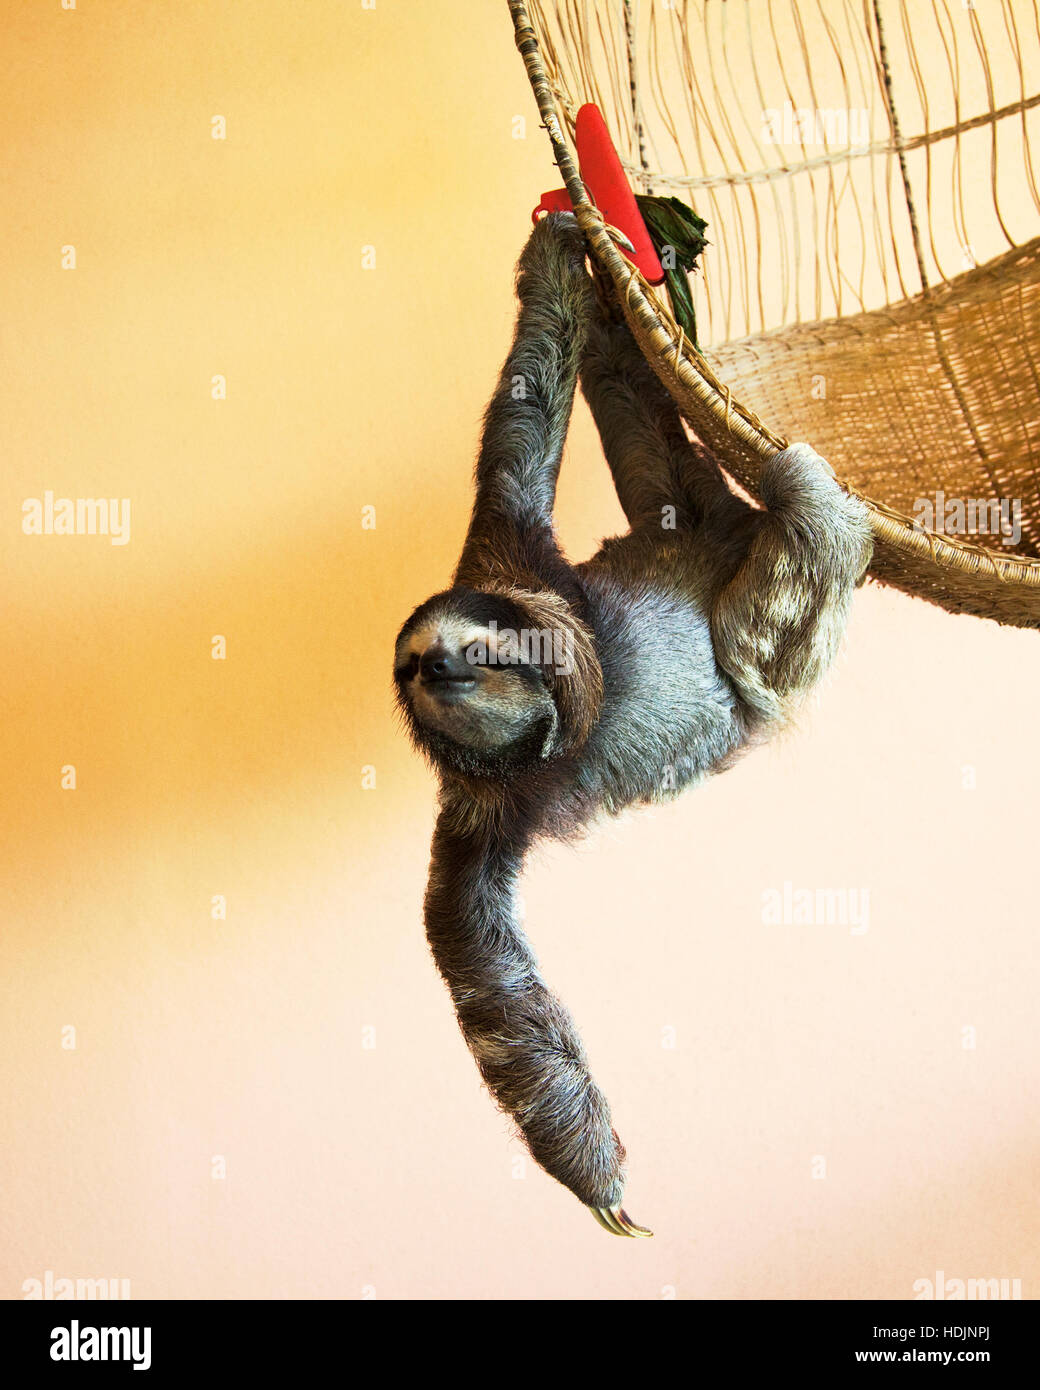 Gerettete Dreizangen-Sloth (Bradypus variegatus), die an einem Korb im Sloth-Heiligtum von Costa Rica hängen Stockfoto